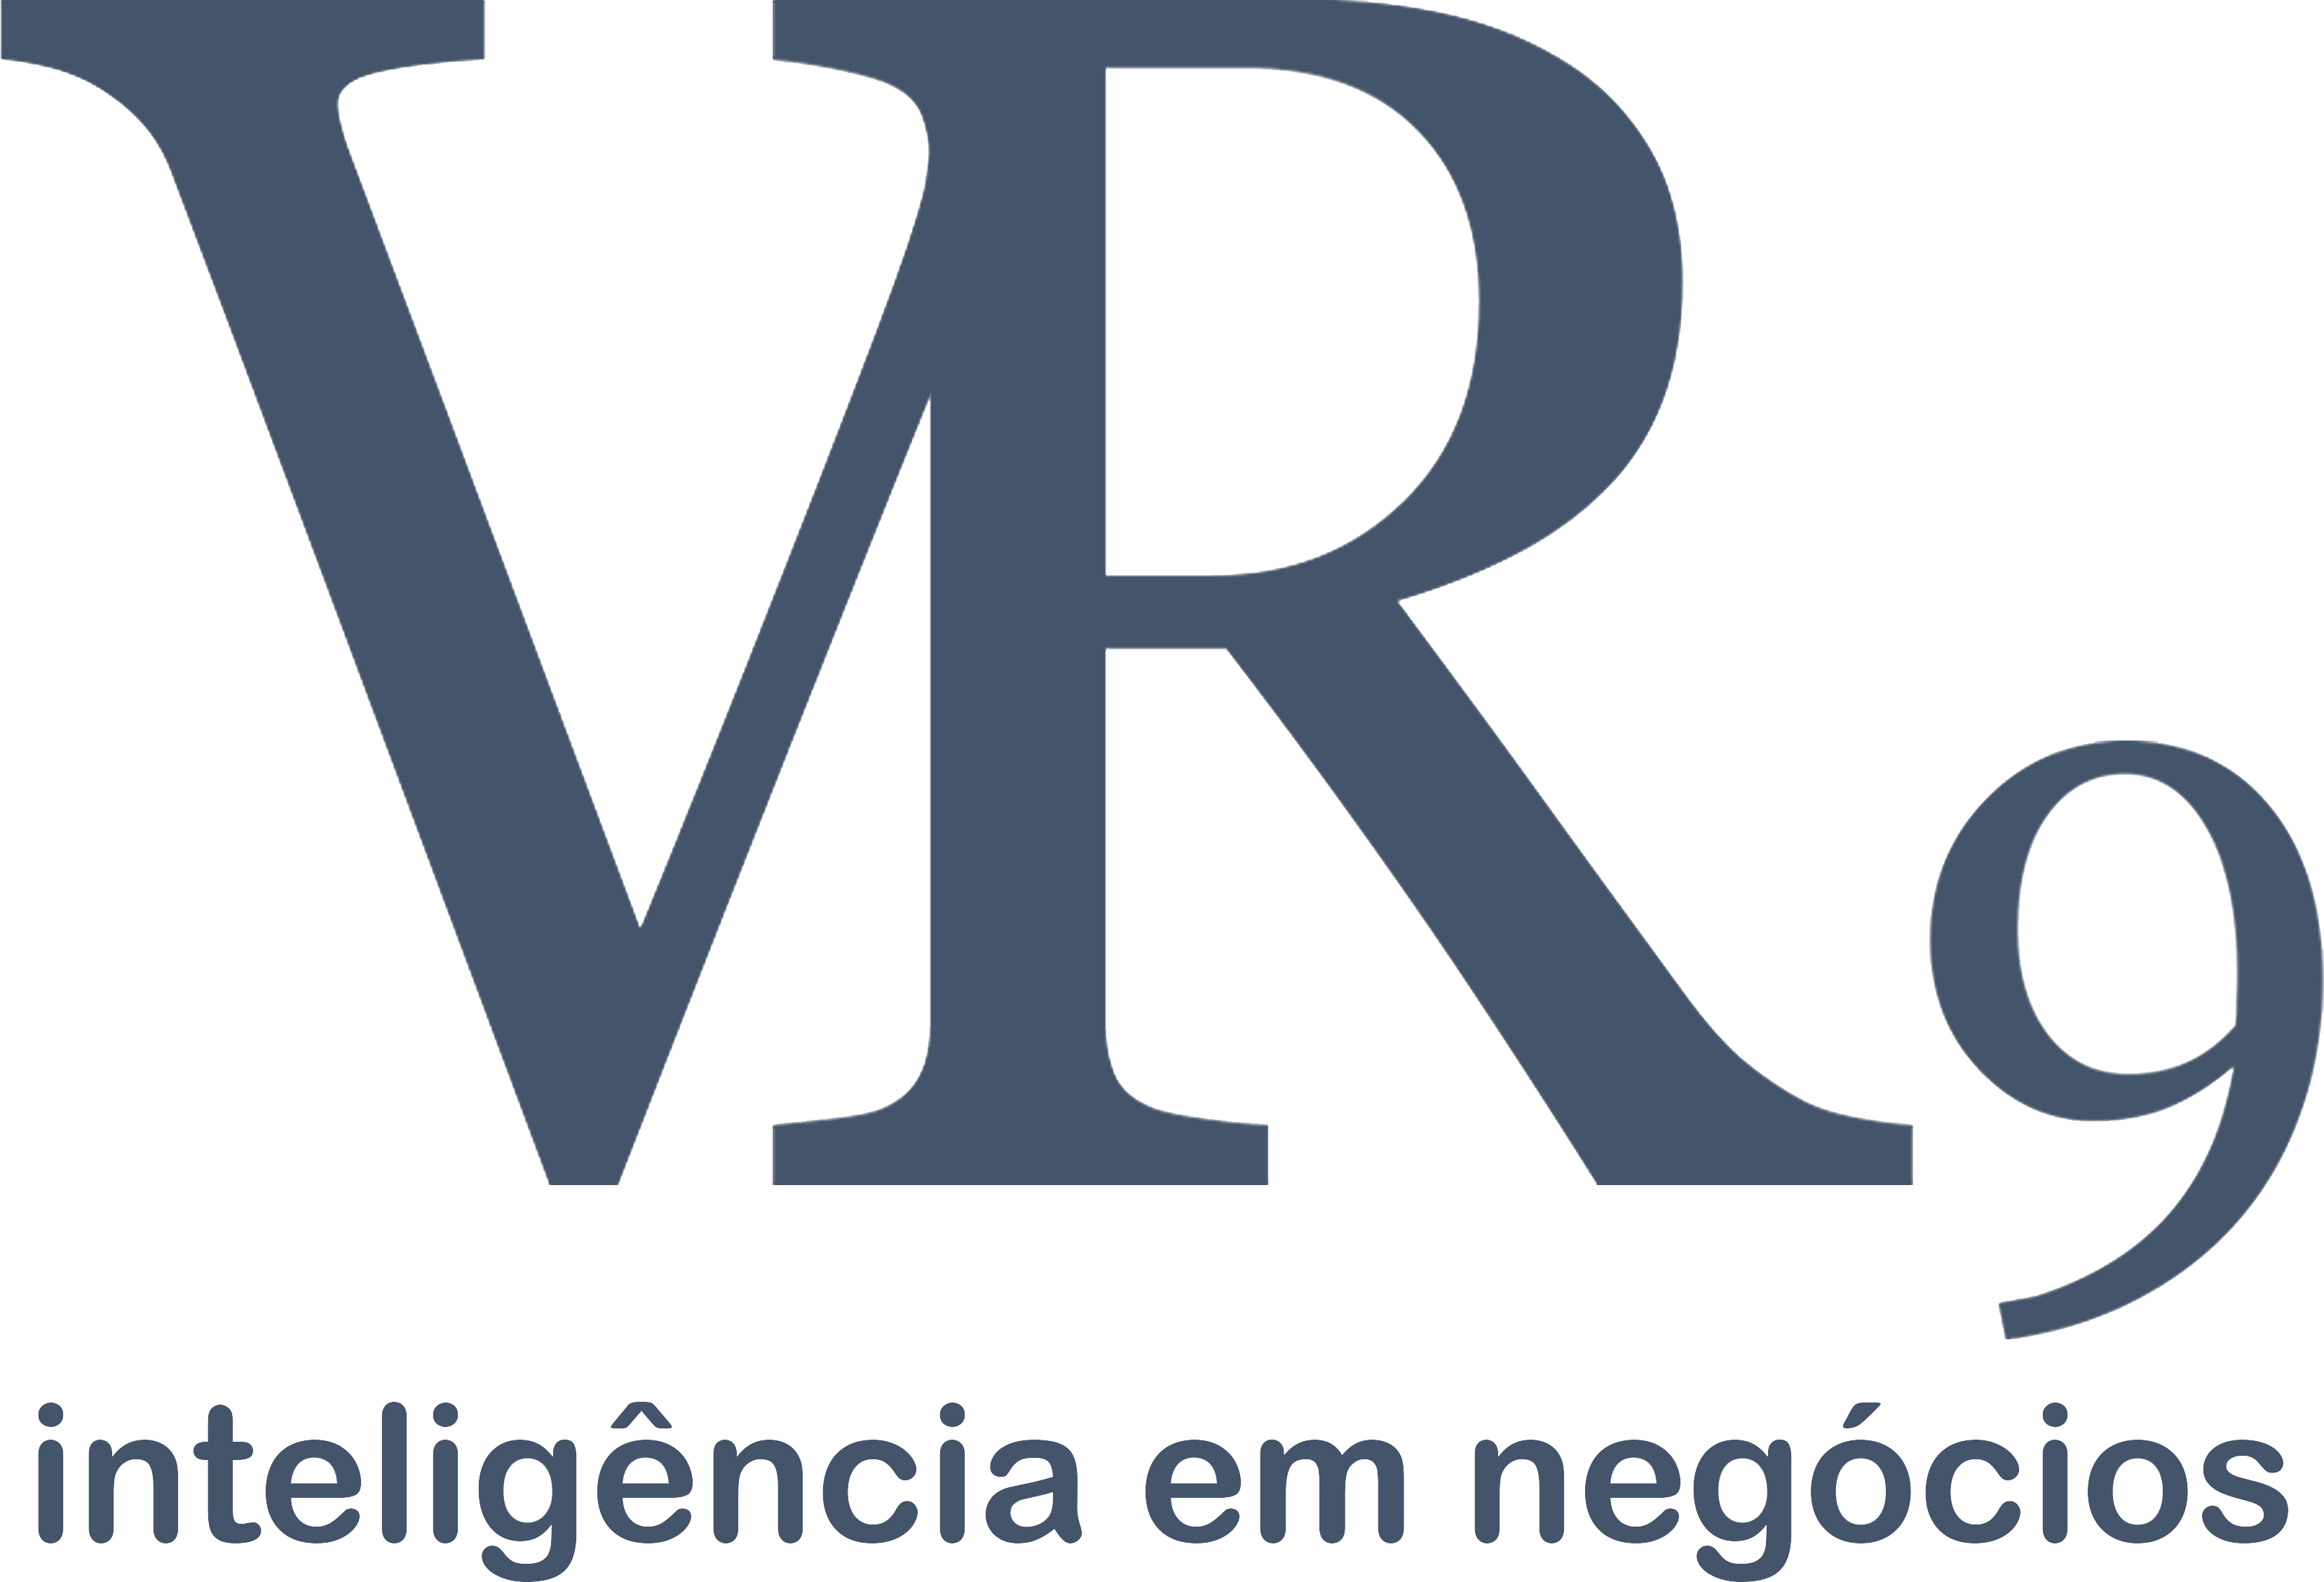 VR9 Consultoria e Negócios Ltda.